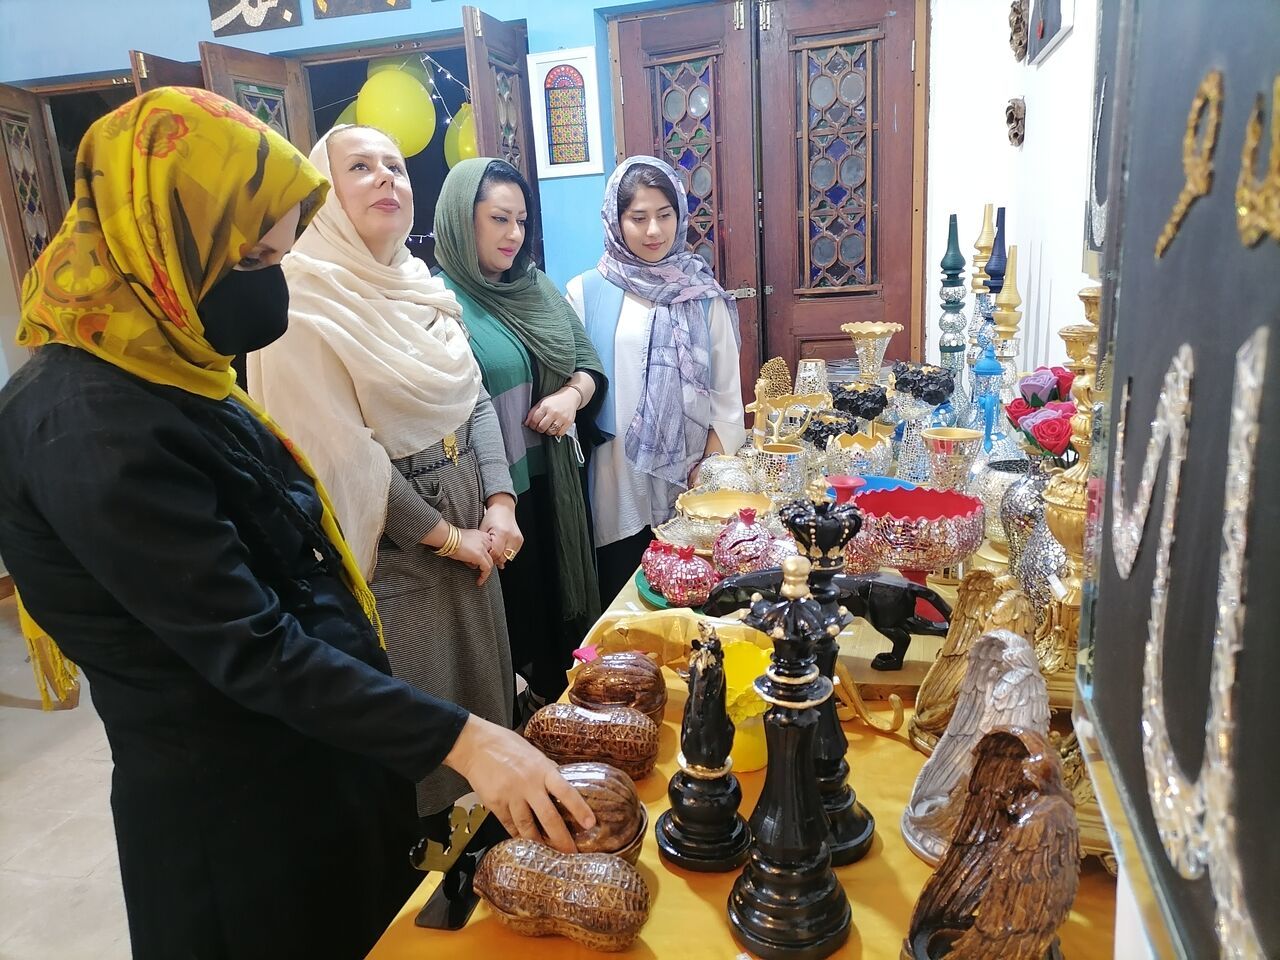 نمایشگاه هنرهای تجسمی یاس در بوشهر گشایش یافت

